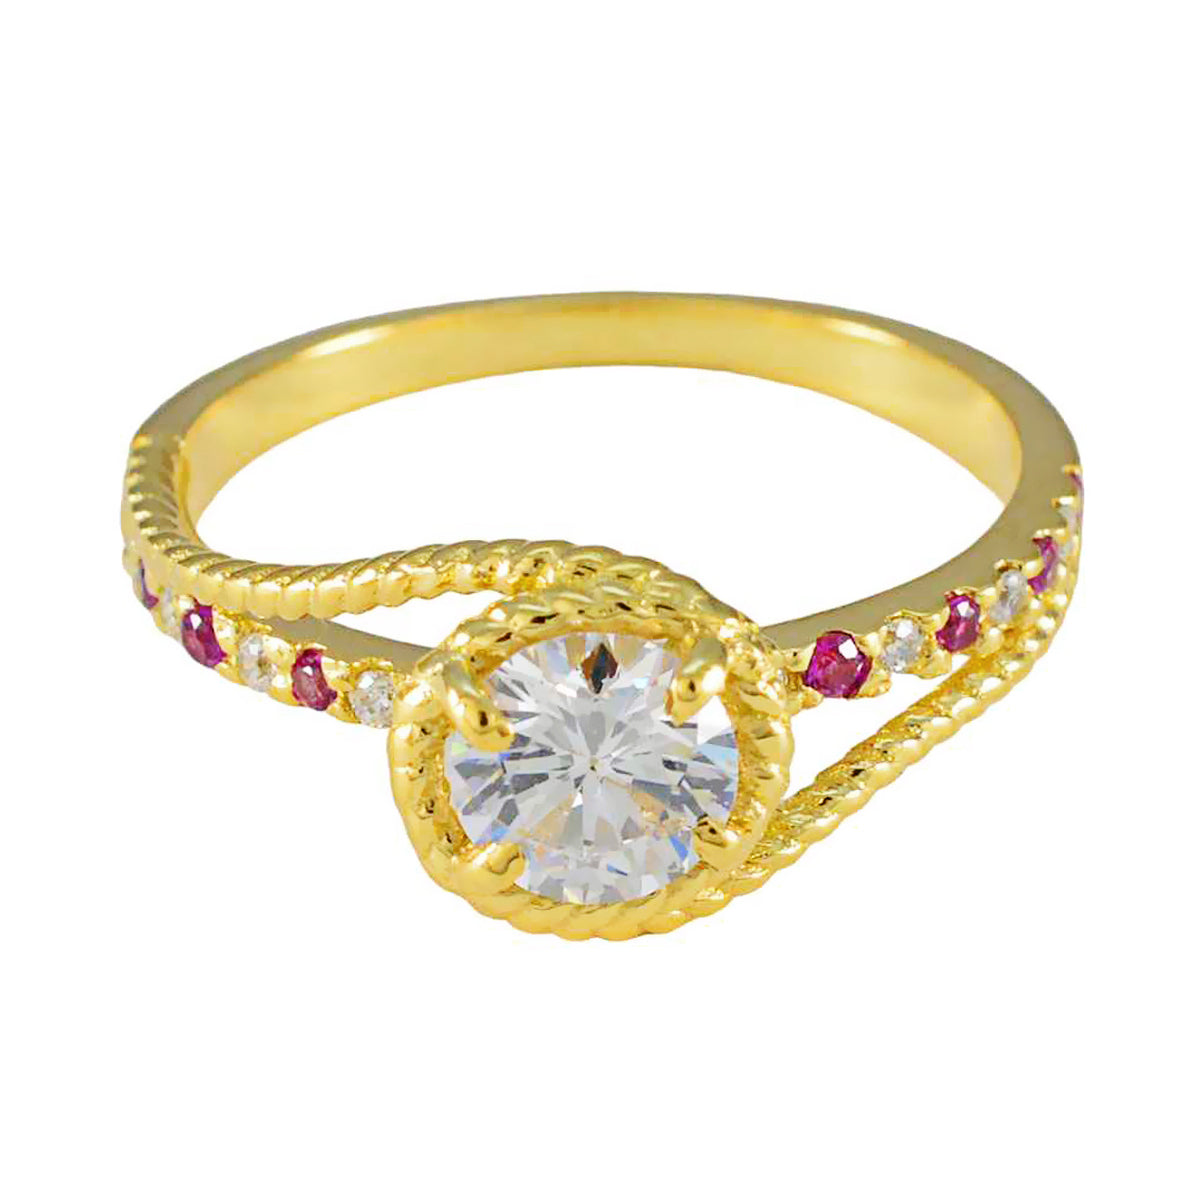 Riyo – belle bague en argent plaqué or jaune, pierre rubis cz, forme ronde, sertissage de griffes, bijoux